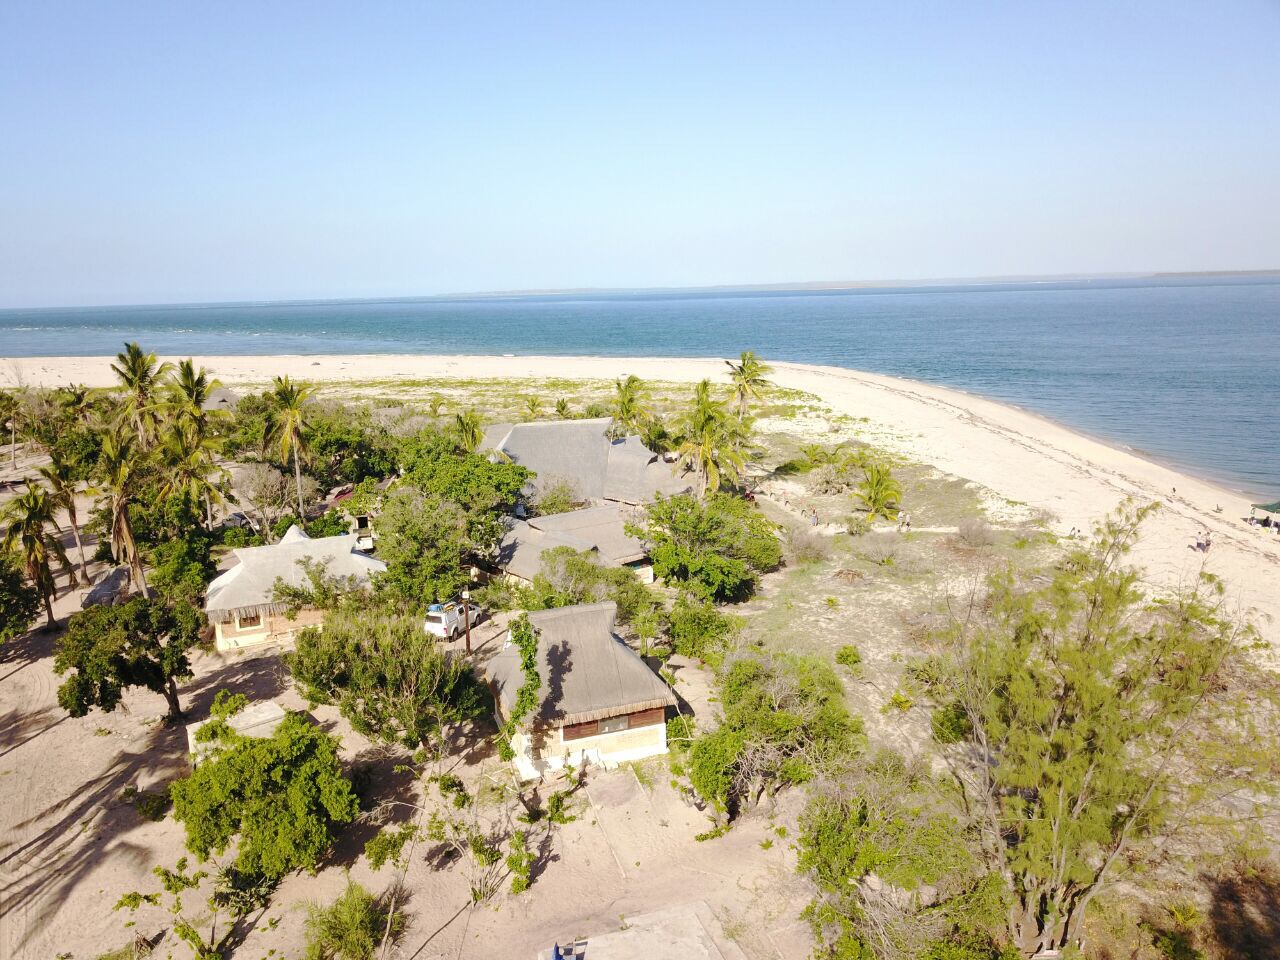 Foto af Marivate Cape Beach og bosættelsen